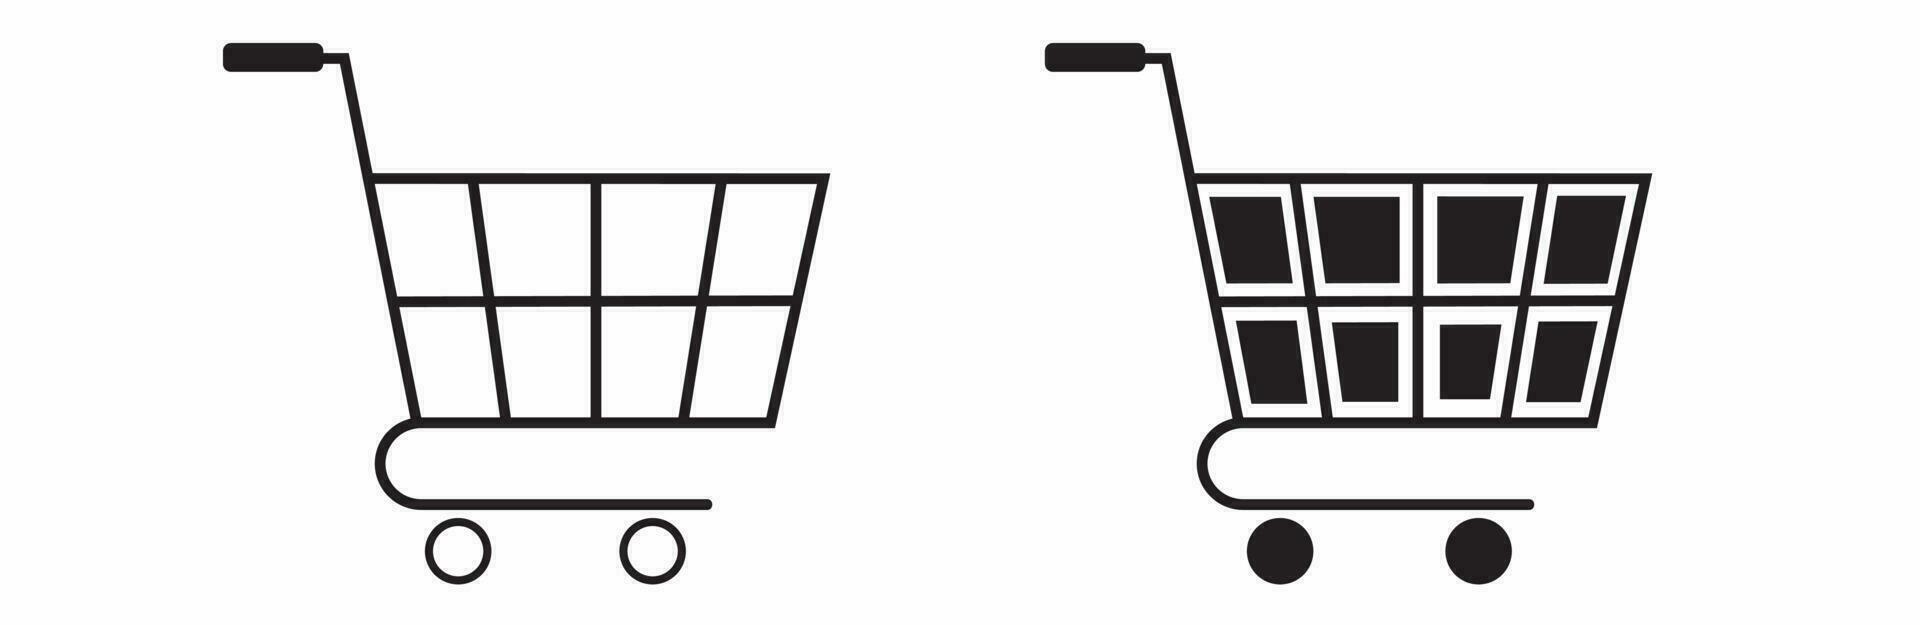 shopping cart vector icon line art